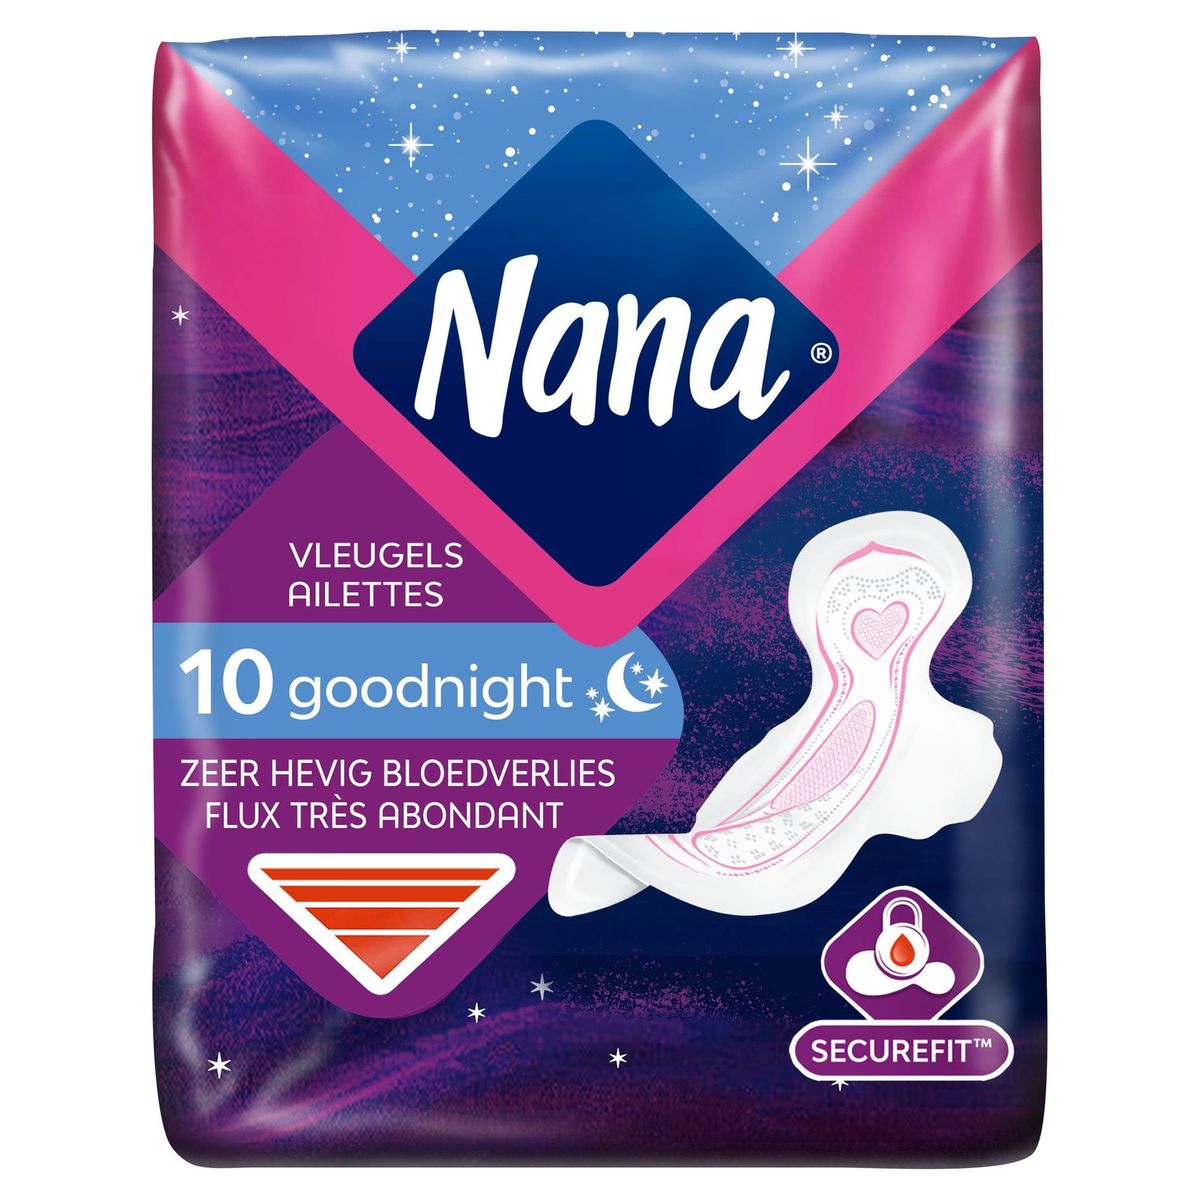 Nana Goodnight Ultra Large Serviette Hygiénique - 10 Pièces